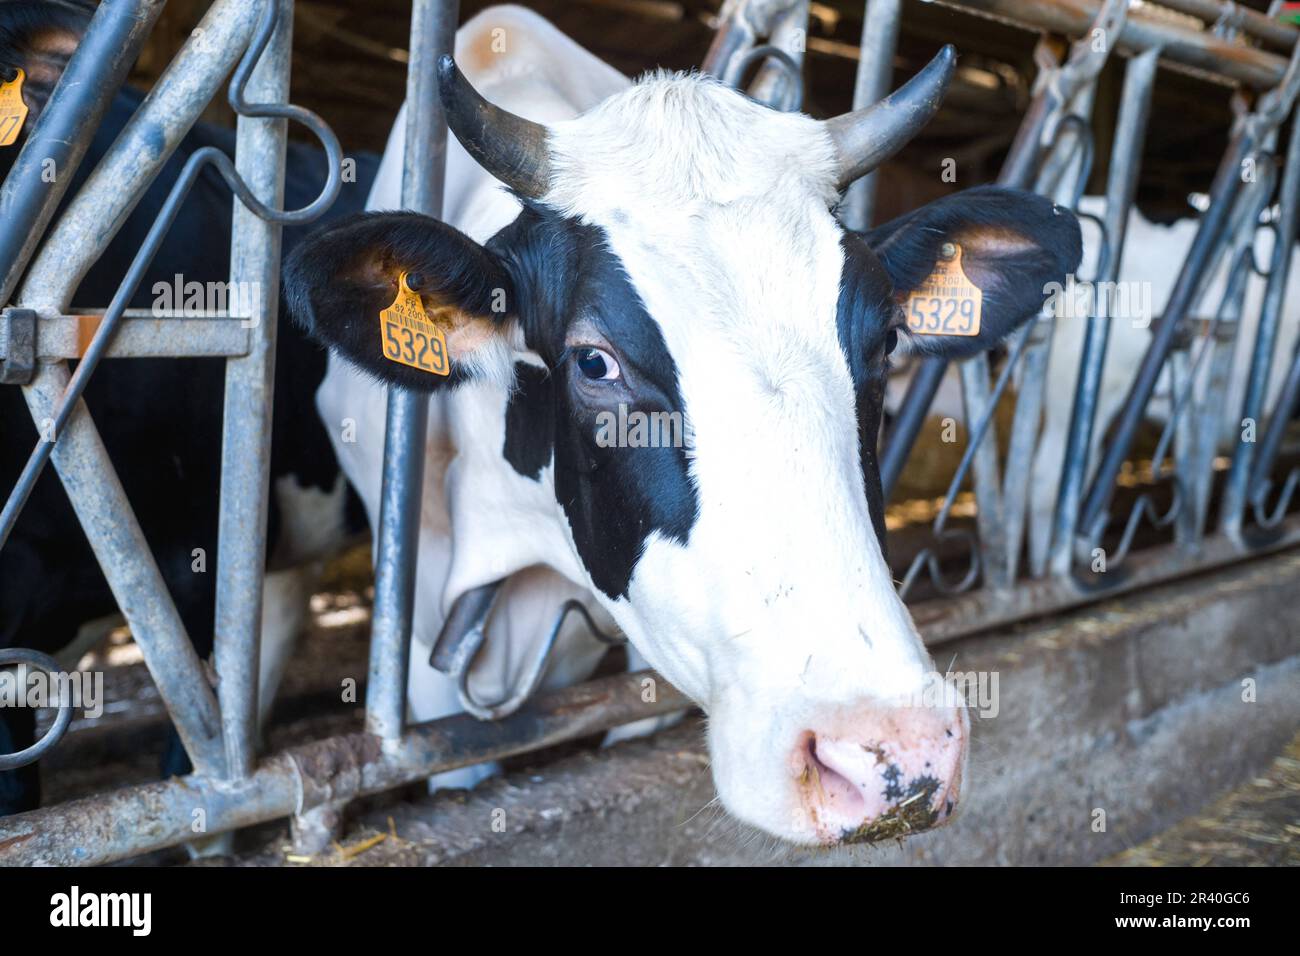 Milchkühe in der Scheune des Ferme des Tilleuls in Saint Nauphary (82). Damien Canteloube ist Milchproduzent. In seinen Kuhställen füttert er etwa hundert Kühe, darunter 45 Milchkühe, mit Leinsamenfutter, das sehr reich an Omega-3s ist und daher weniger Methan in die Atmosphäre emittiert. Wie 7.000 Landwirte hat er sich für die Erzeugung, Ernte und den Vertrieb unter dem Etikett Bleu-Blanc-Cœur entschieden, das darauf abzielt, die Artenvielfalt auf dem Land zu verbessern und den Tellern der Verbraucher eine bessere Nährwert- und Umweltqualität zu bieten. Frankreich, St. Nauphary, 25. Mai 2023. Foto: Patricia Huchot-Boissie Stockfoto